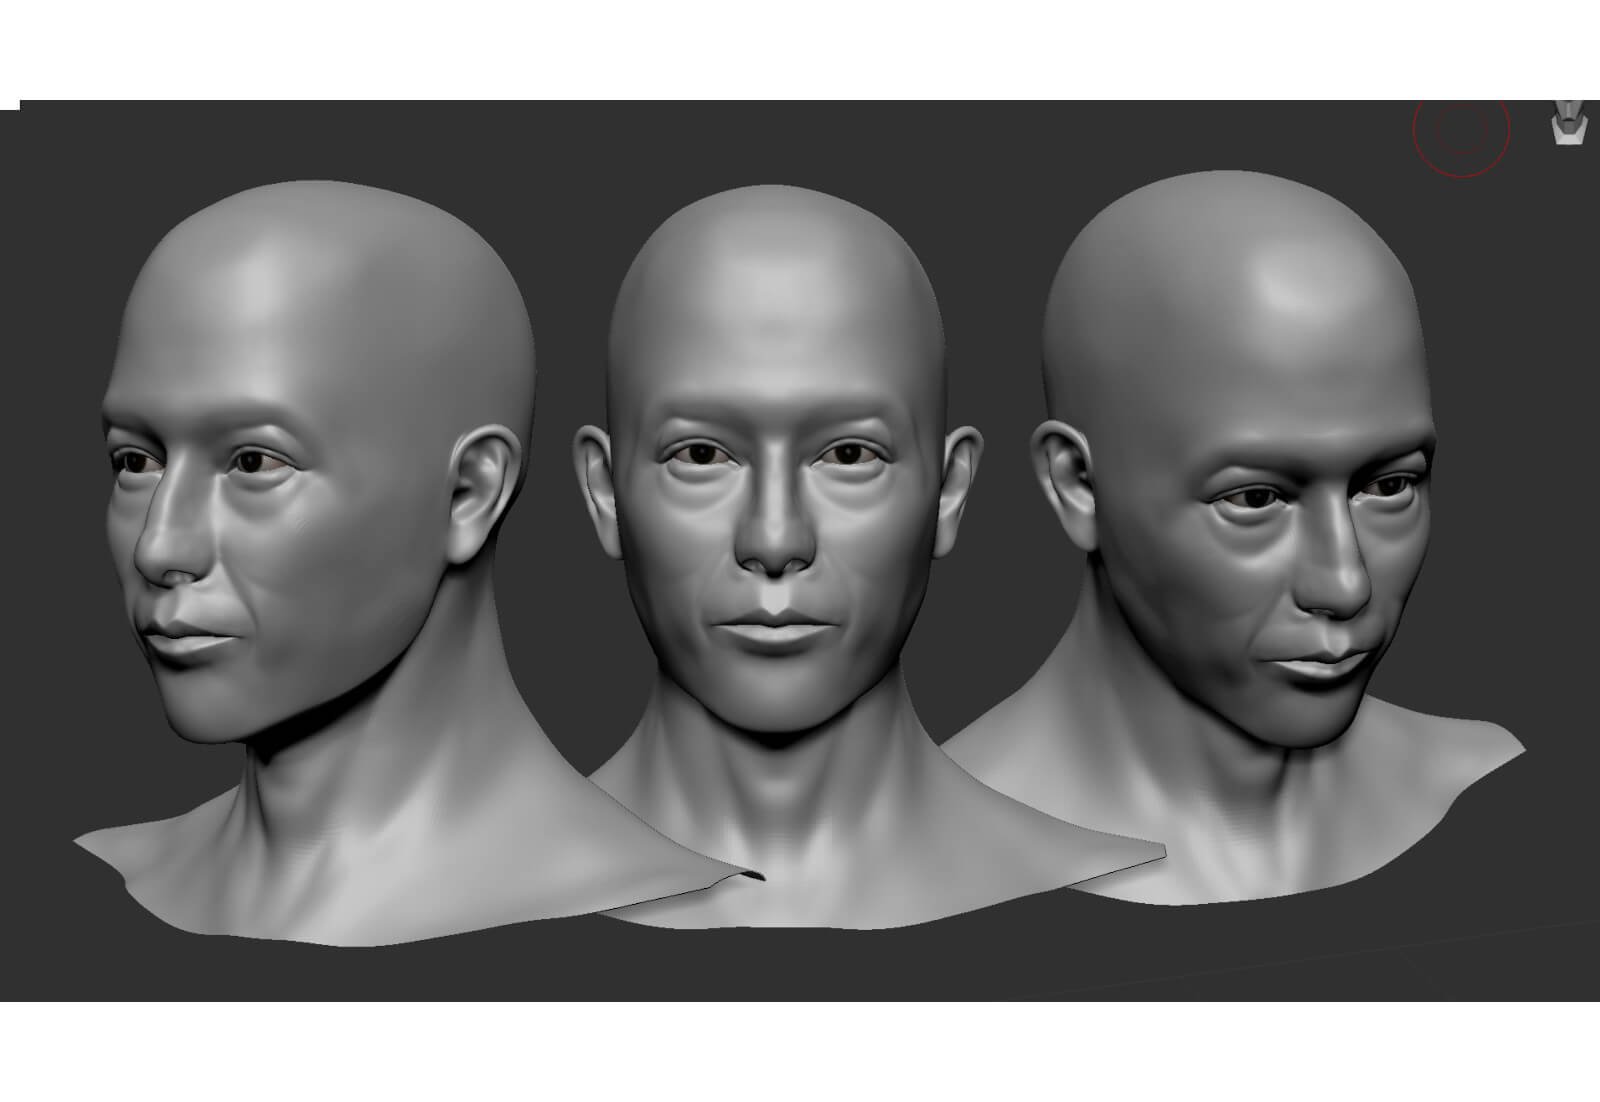 3D model of a man's head